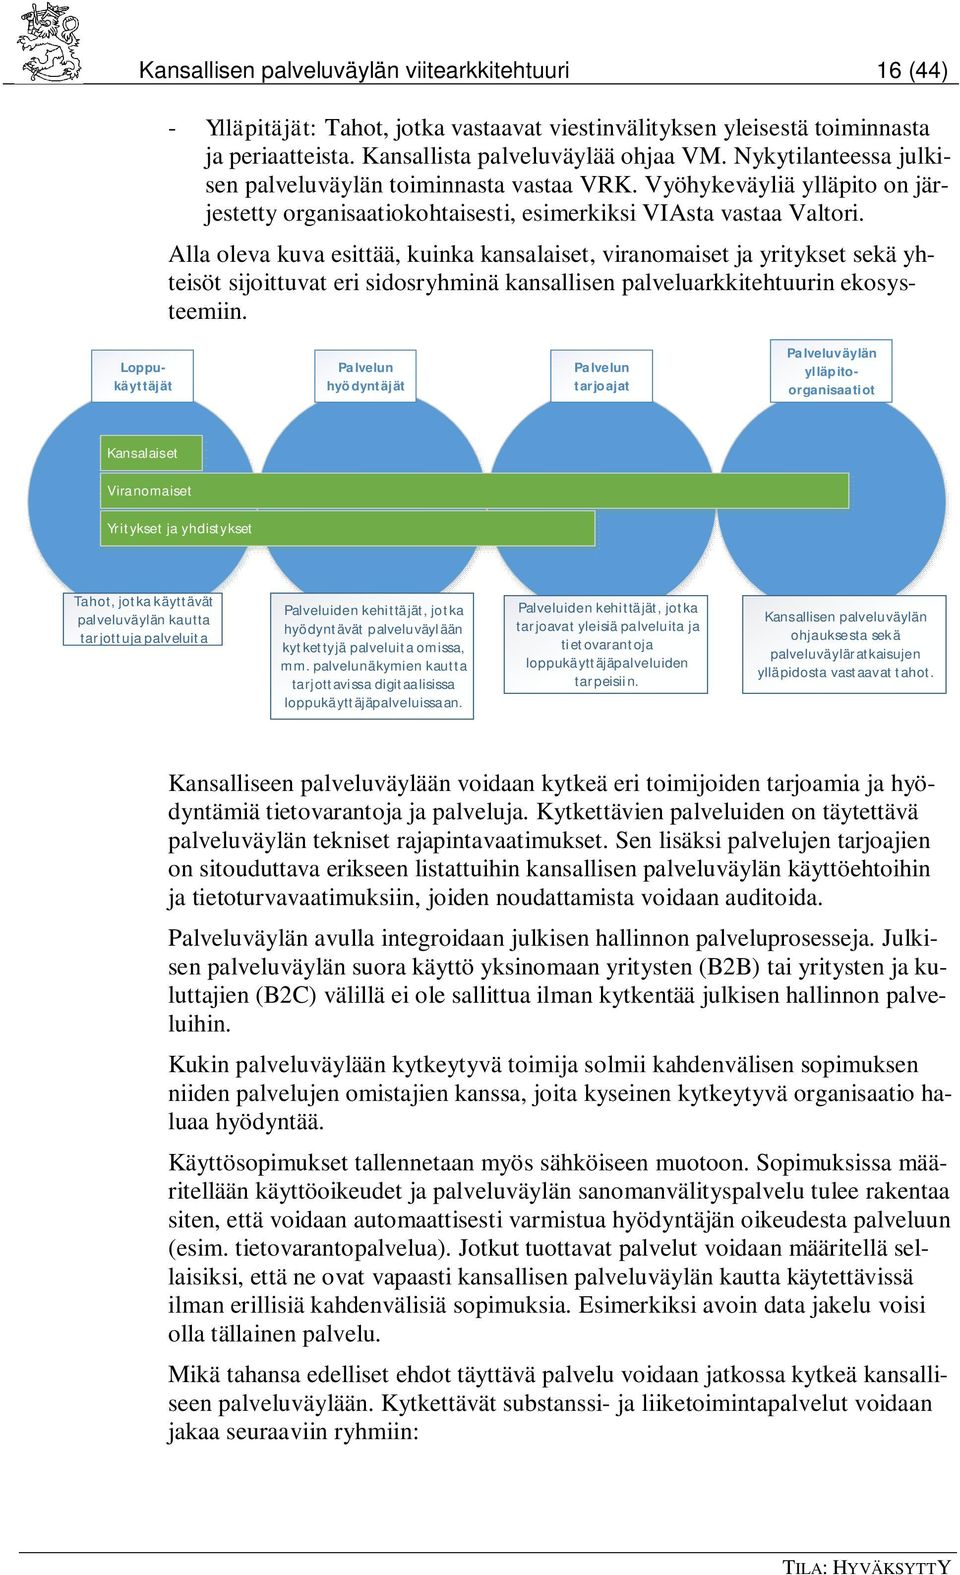 Alla oleva kuva esittää, kuinka kansalaiset, viranomaiset ja yritykset sekä yhteisöt sijoittuvat eri sidosryhminä kansallisen palveluarkkitehtuurin ekosysteemiin.